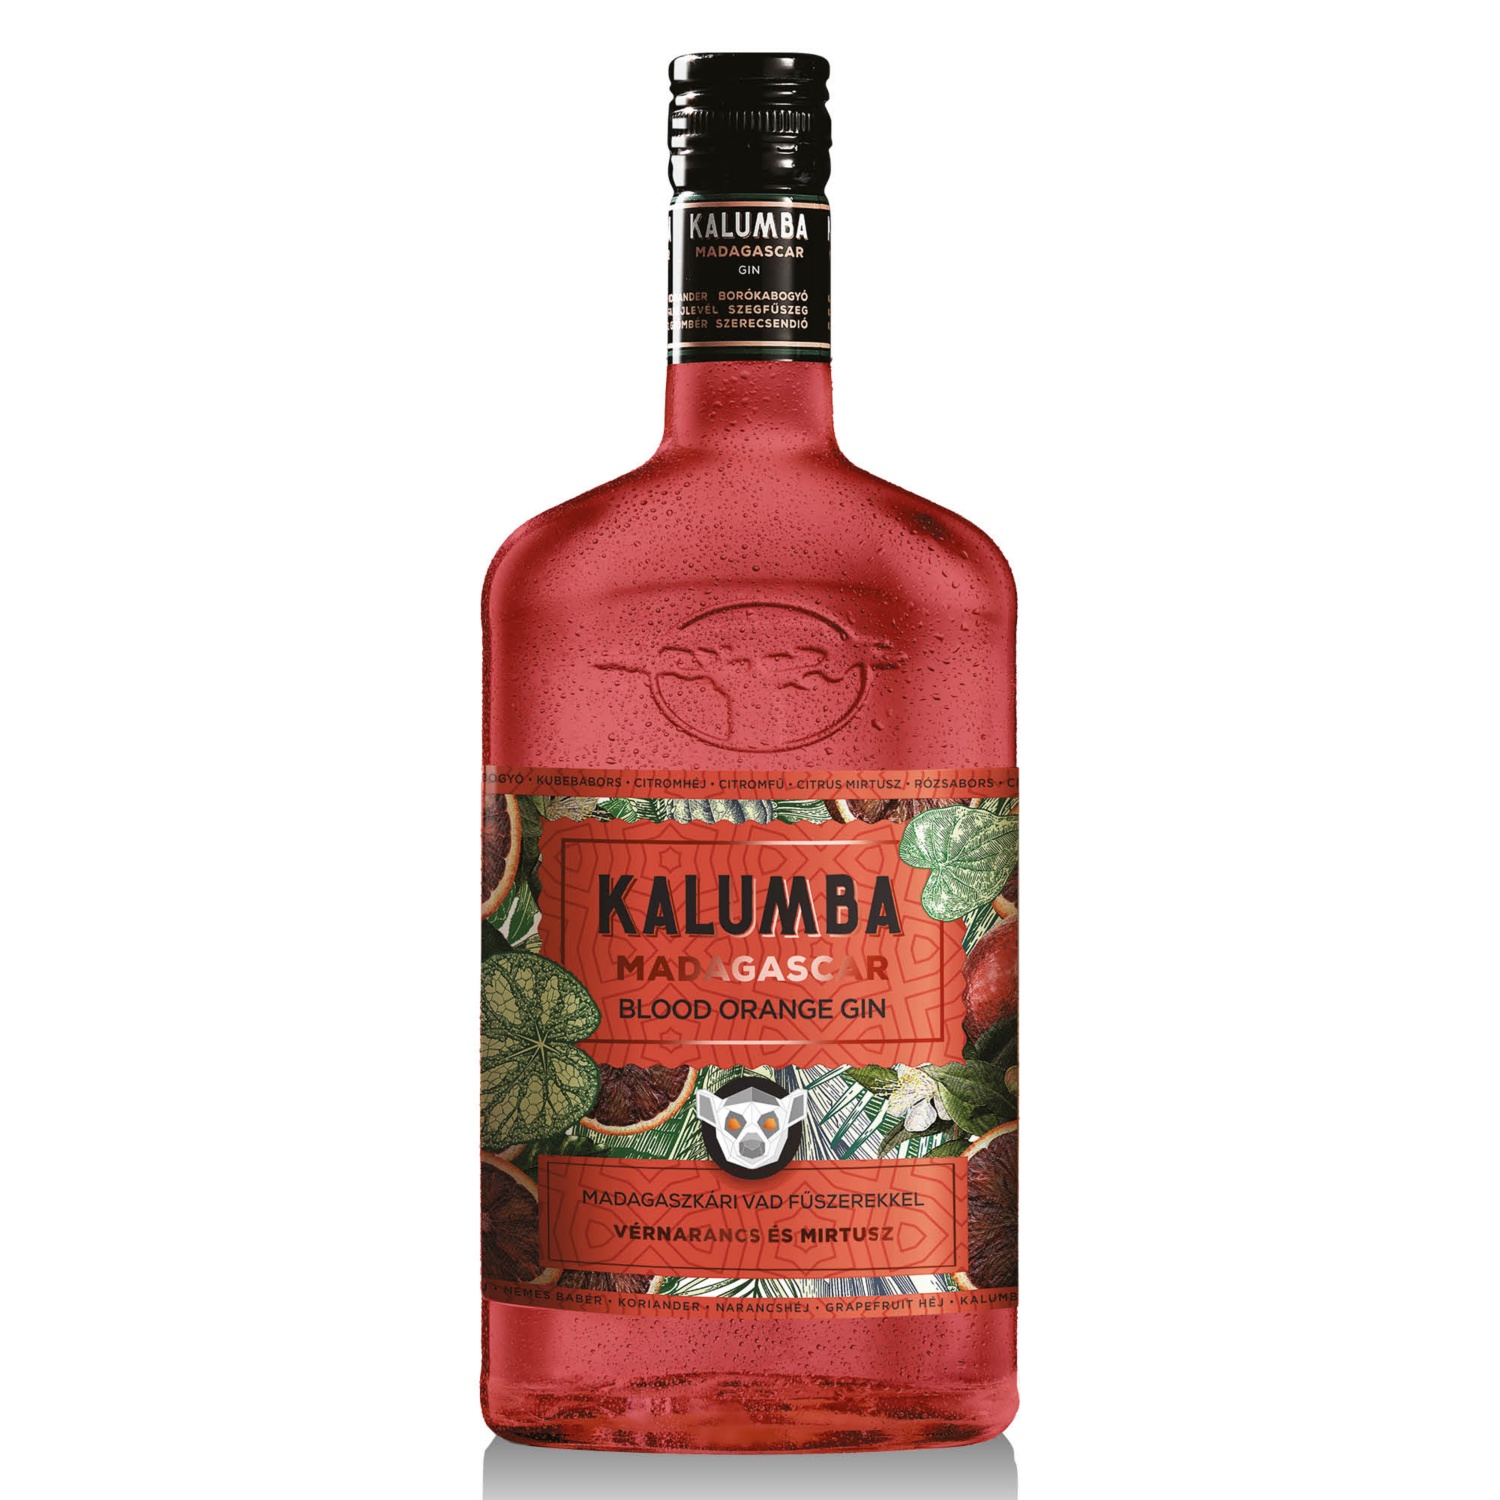 KALUMBA MADAGASCAR Blood orange gin, 0,7 l